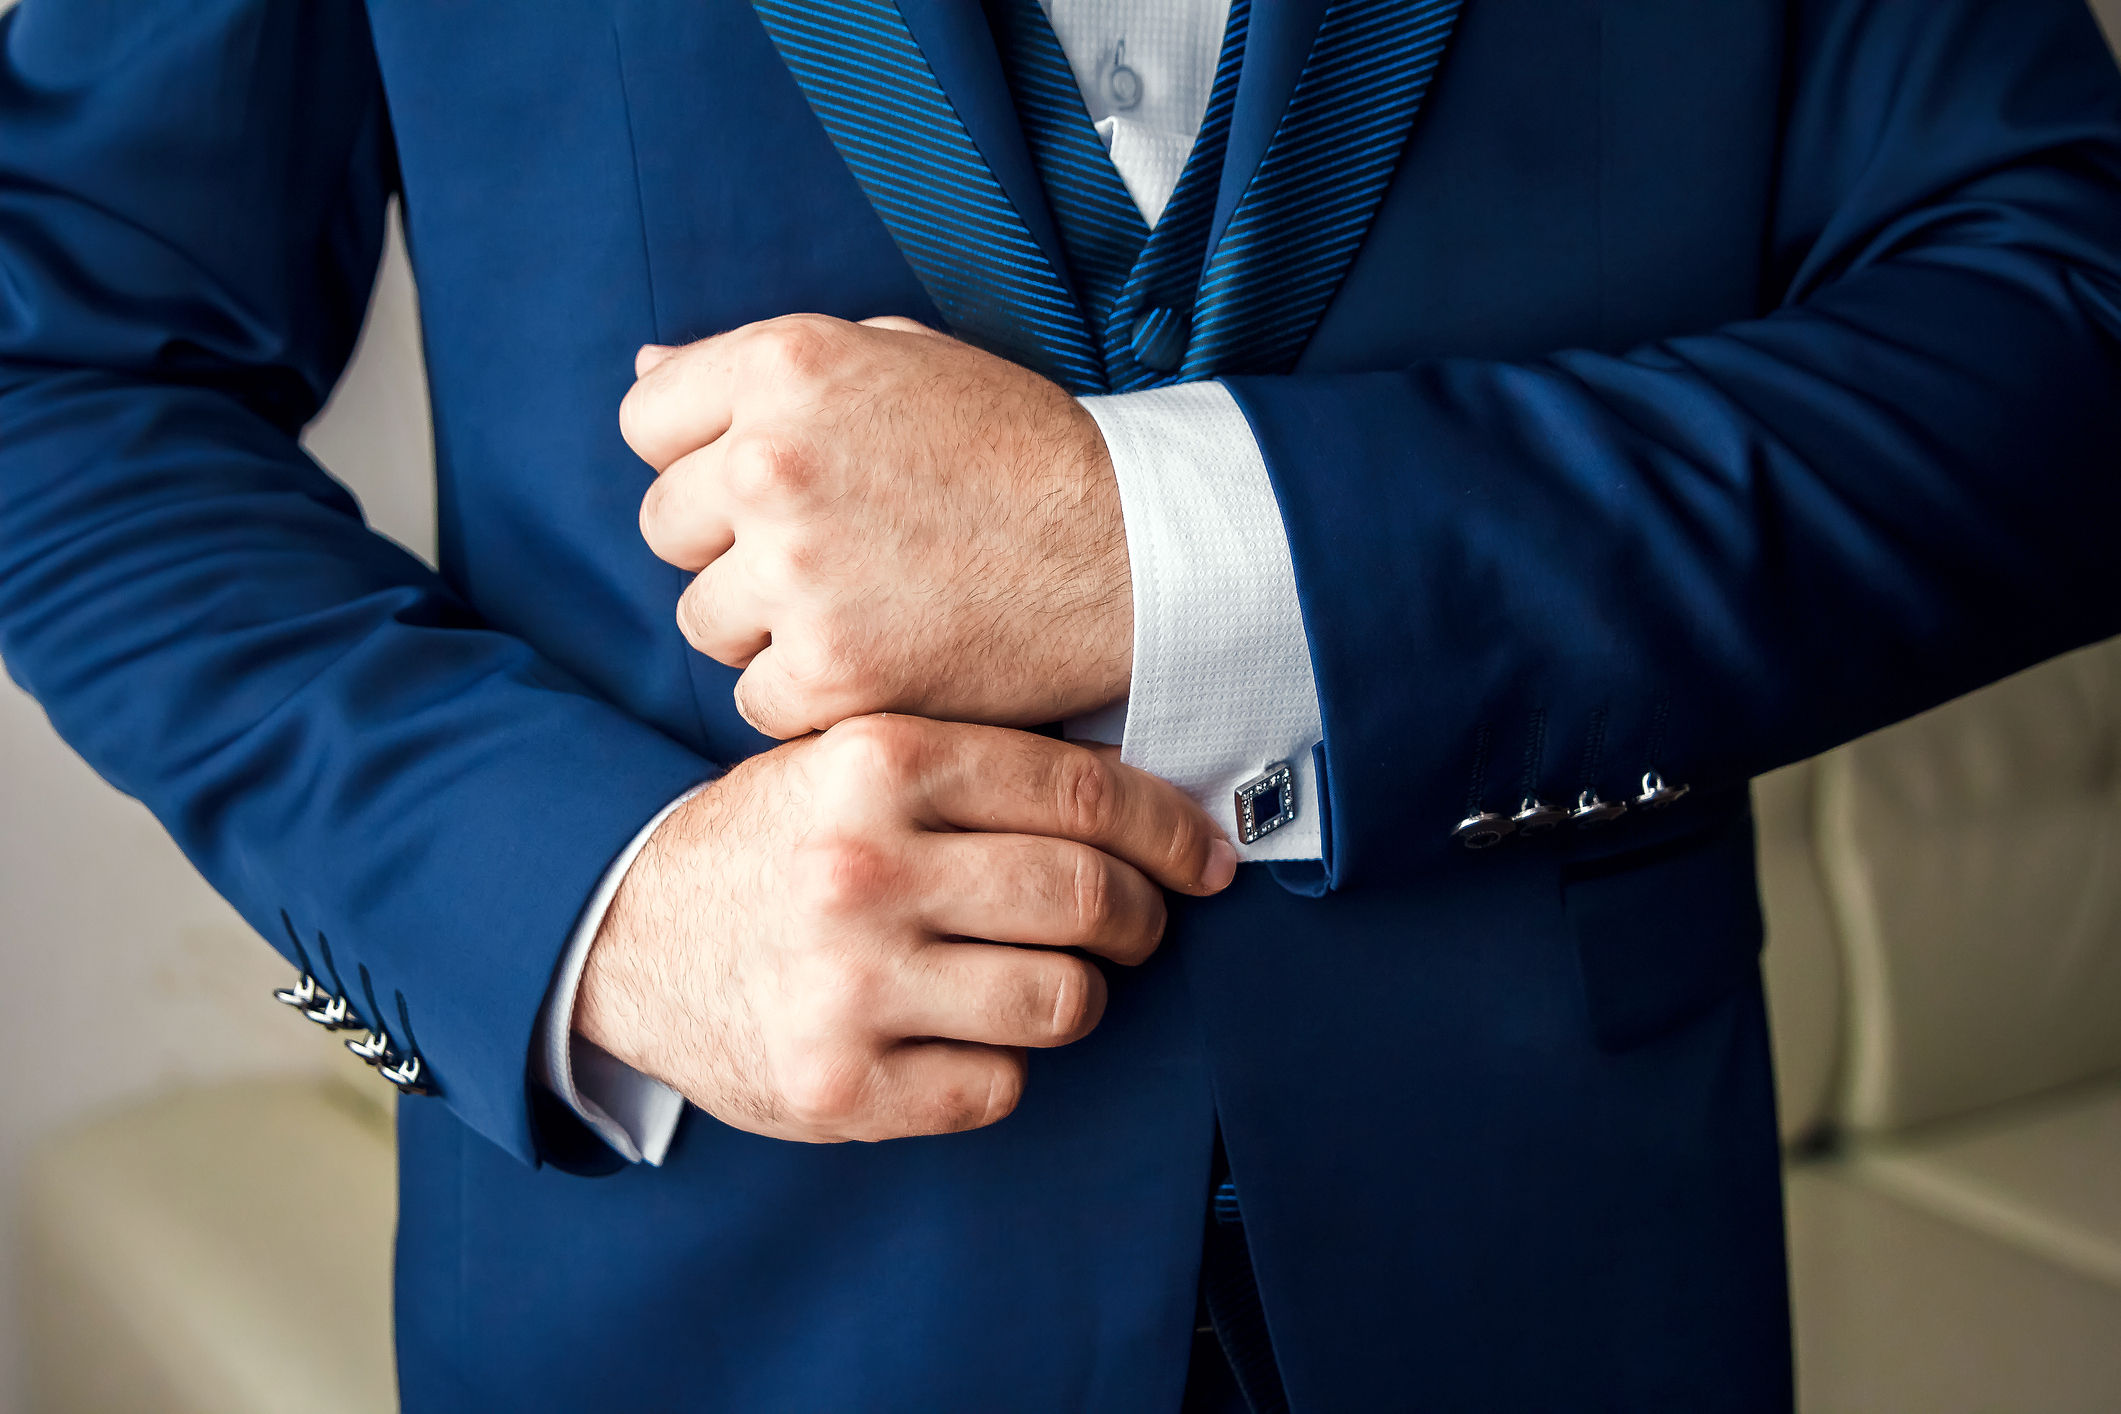 A debonair gentleman's guide to shirt cuffs